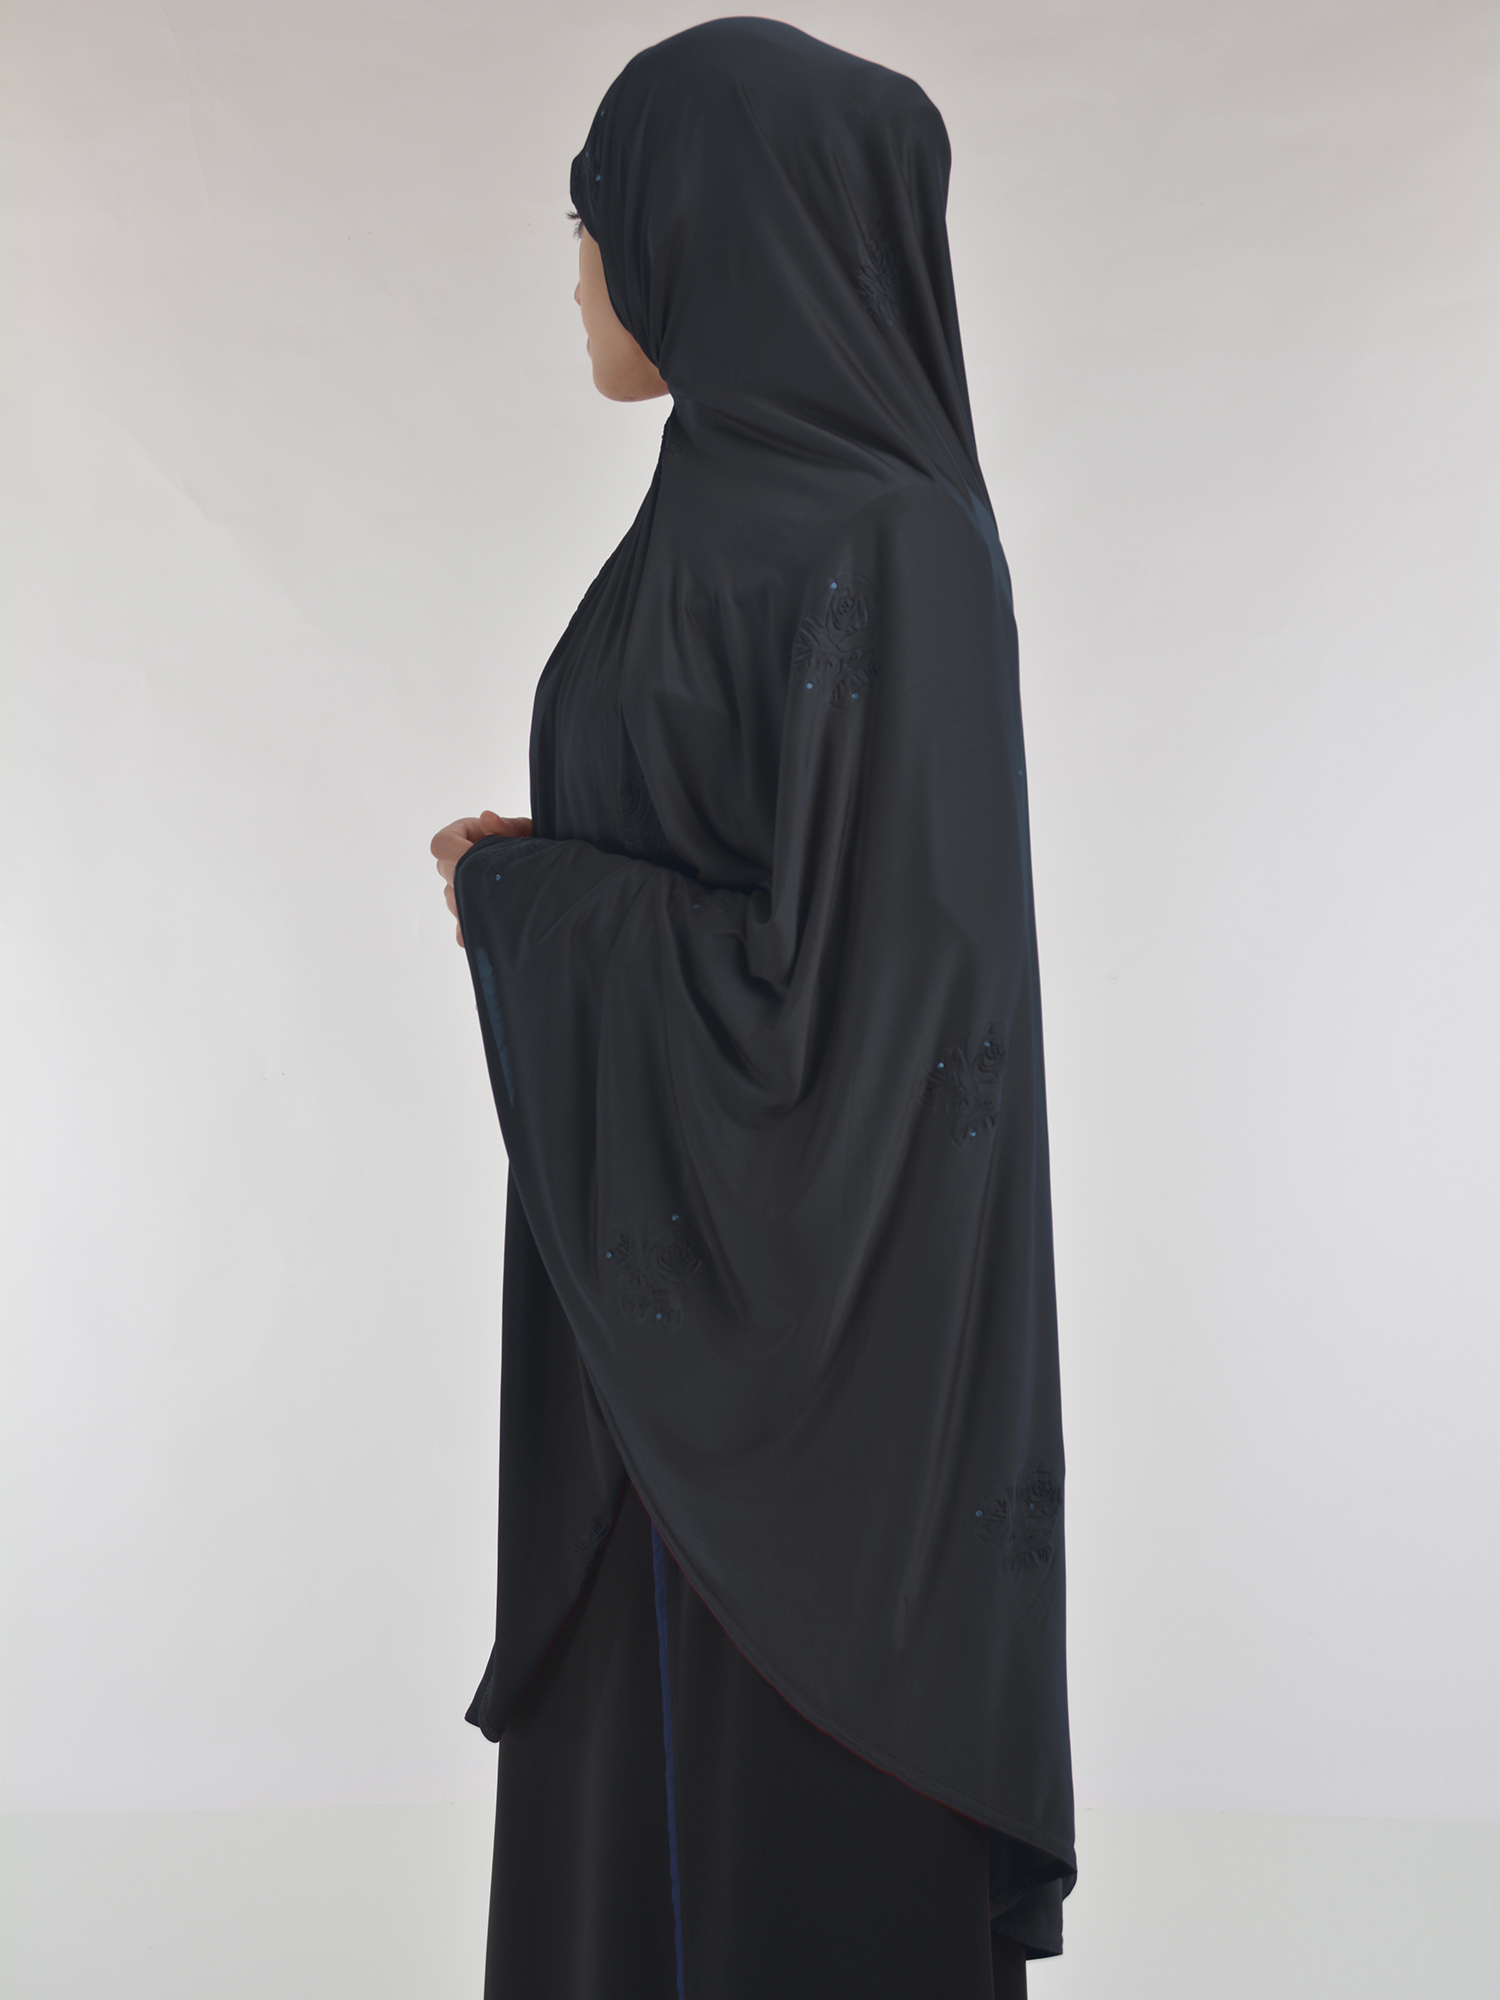 Rhinestone Floral-Imprint Al-Amira Khimar/Hijab | HI2106 » Alhannah ...